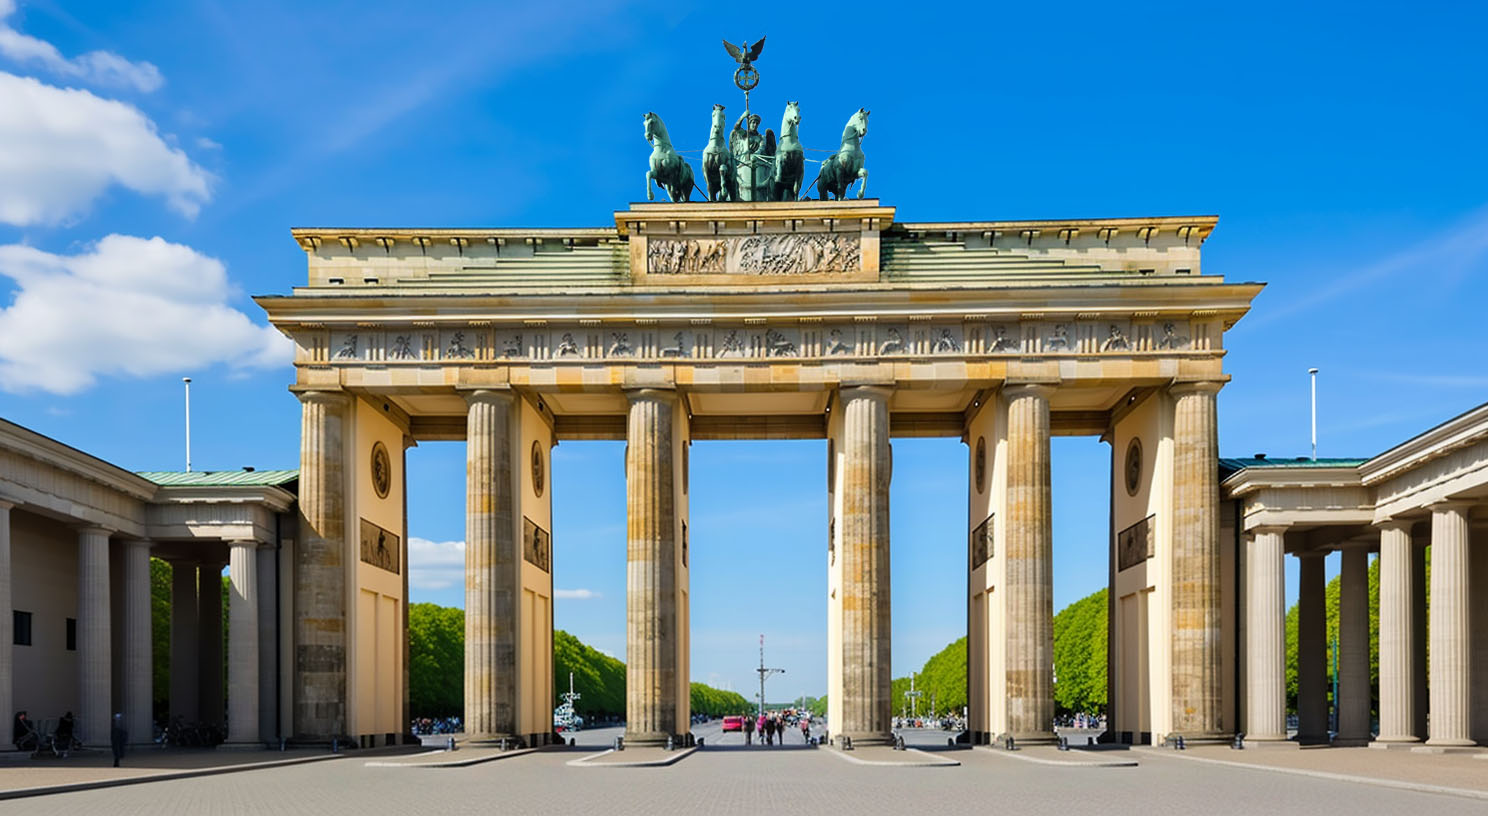 Deutschland - faszinierende Mischung aus reichem historischem Erbe, pulsierenden Städten, atemberaubender Natur und vielfältiger Kultur